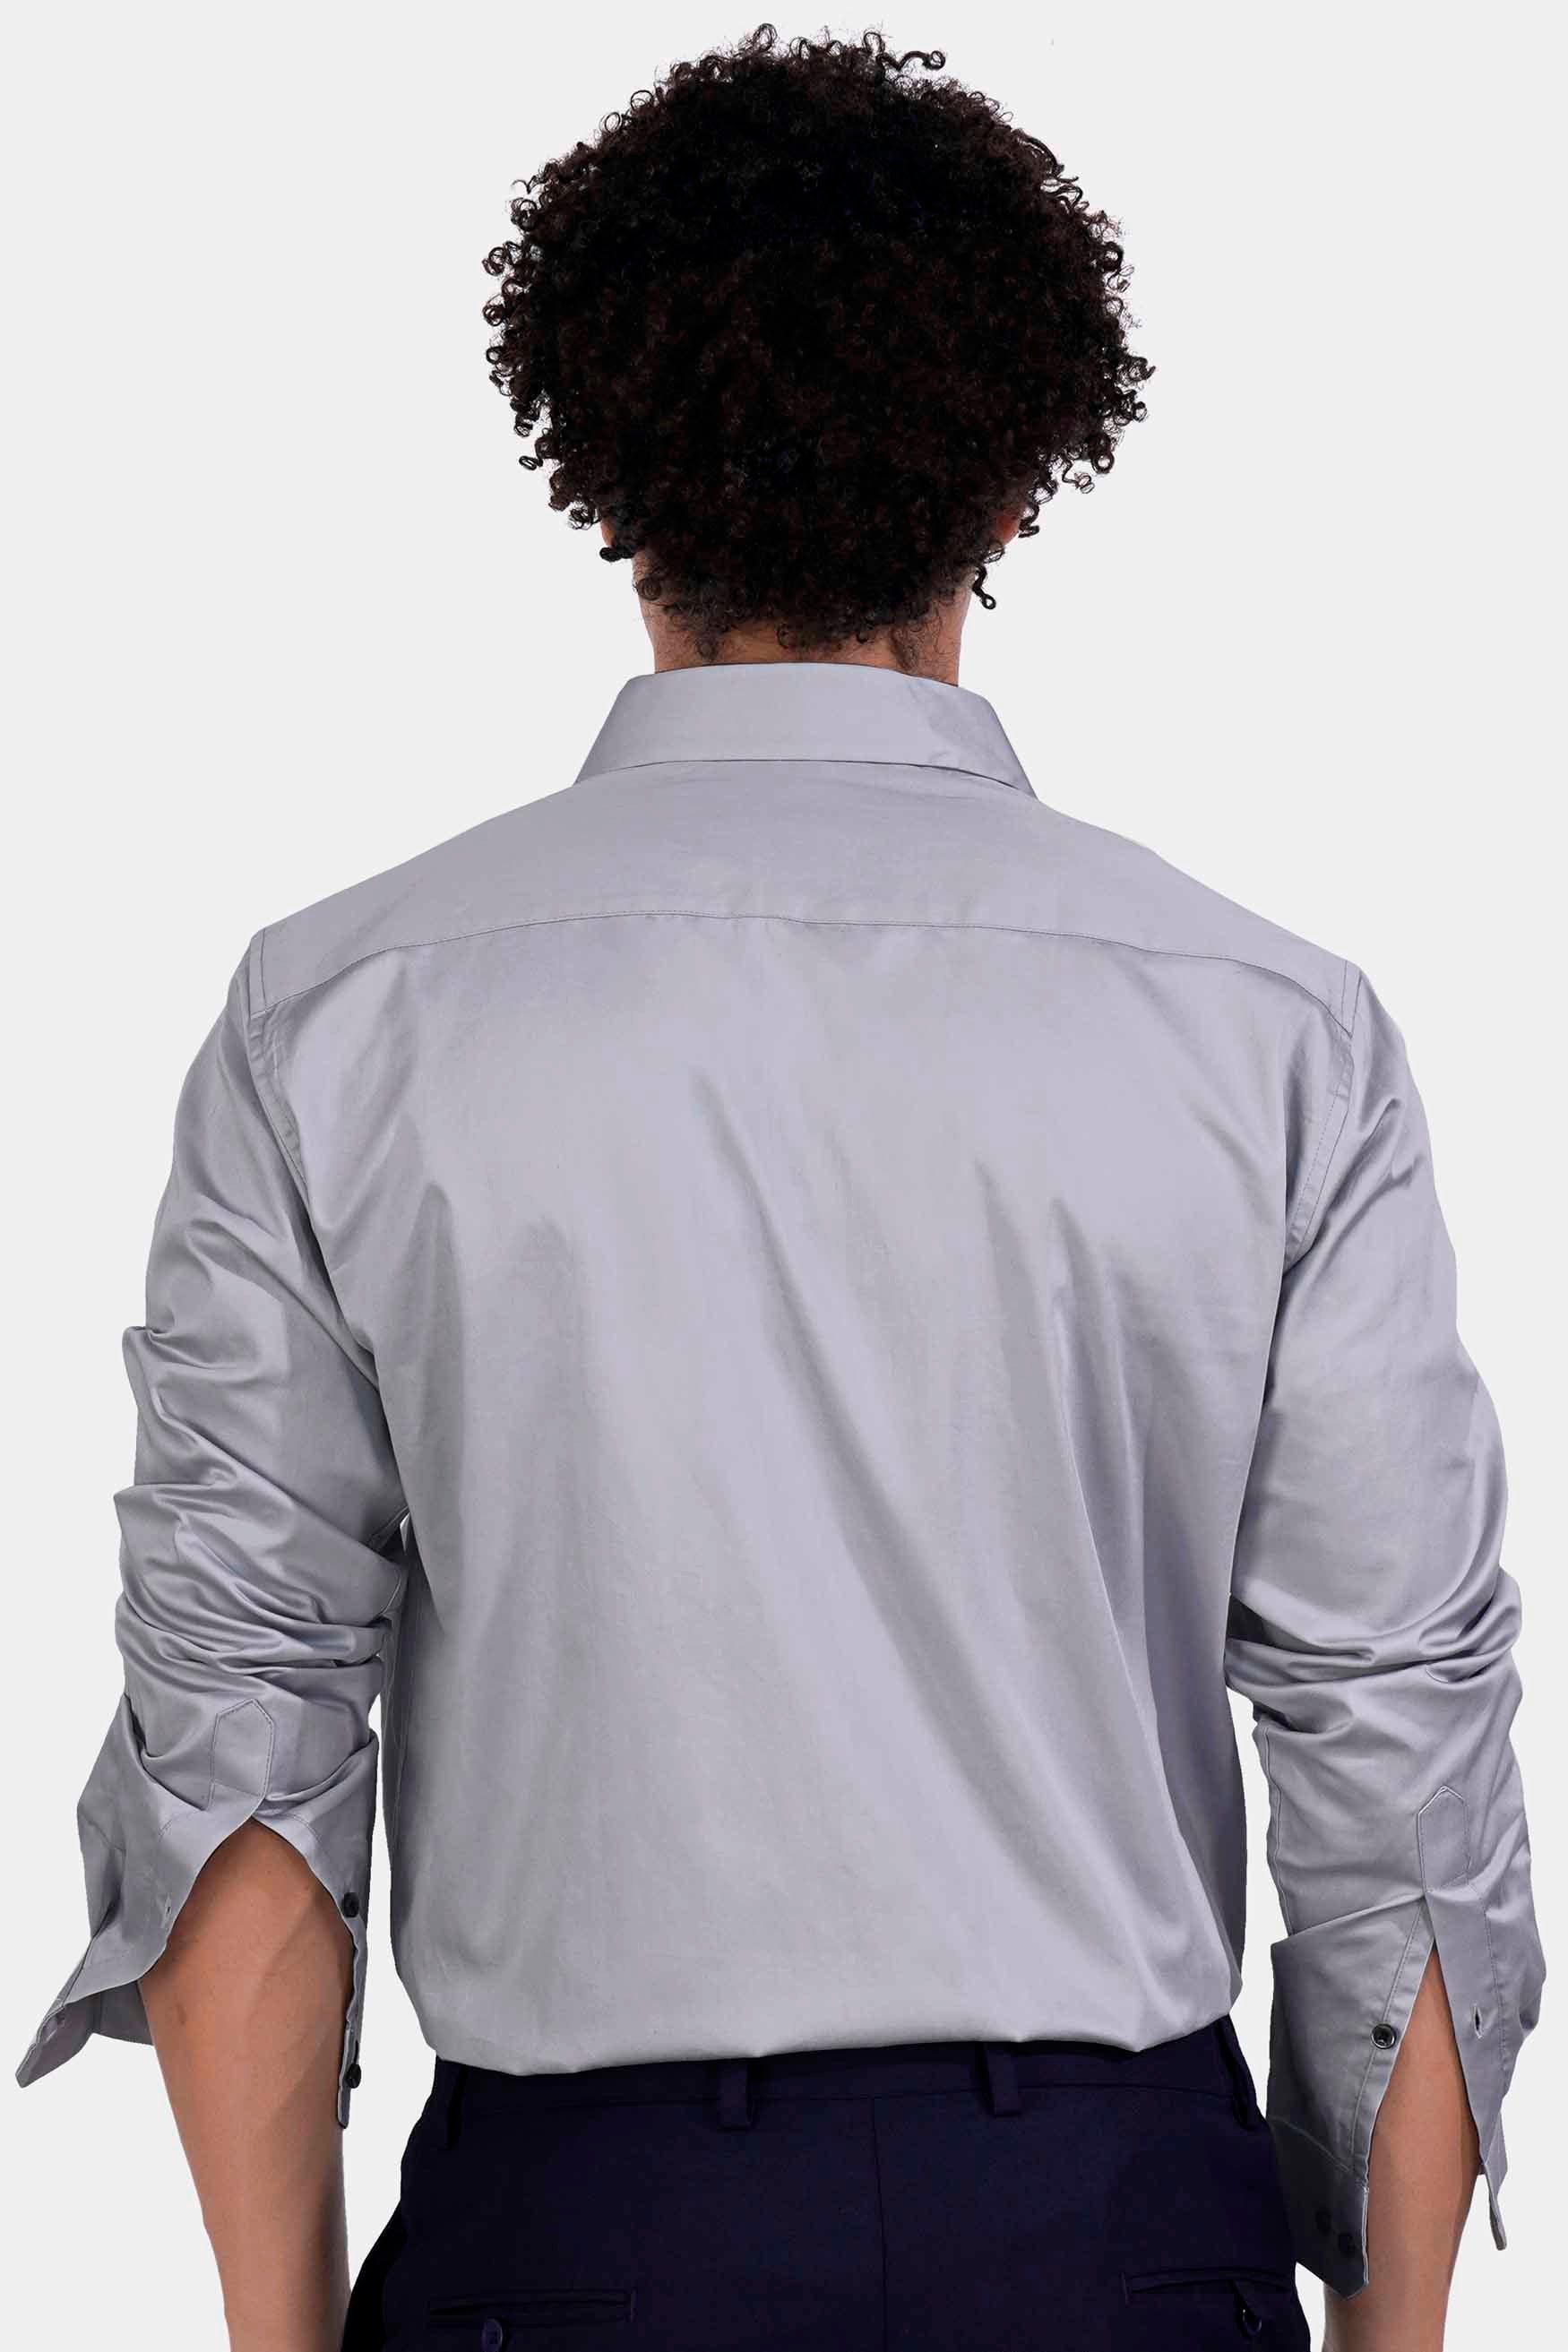 Storm Gray Subtle Sheen Super Soft Premium Cotton Shirt